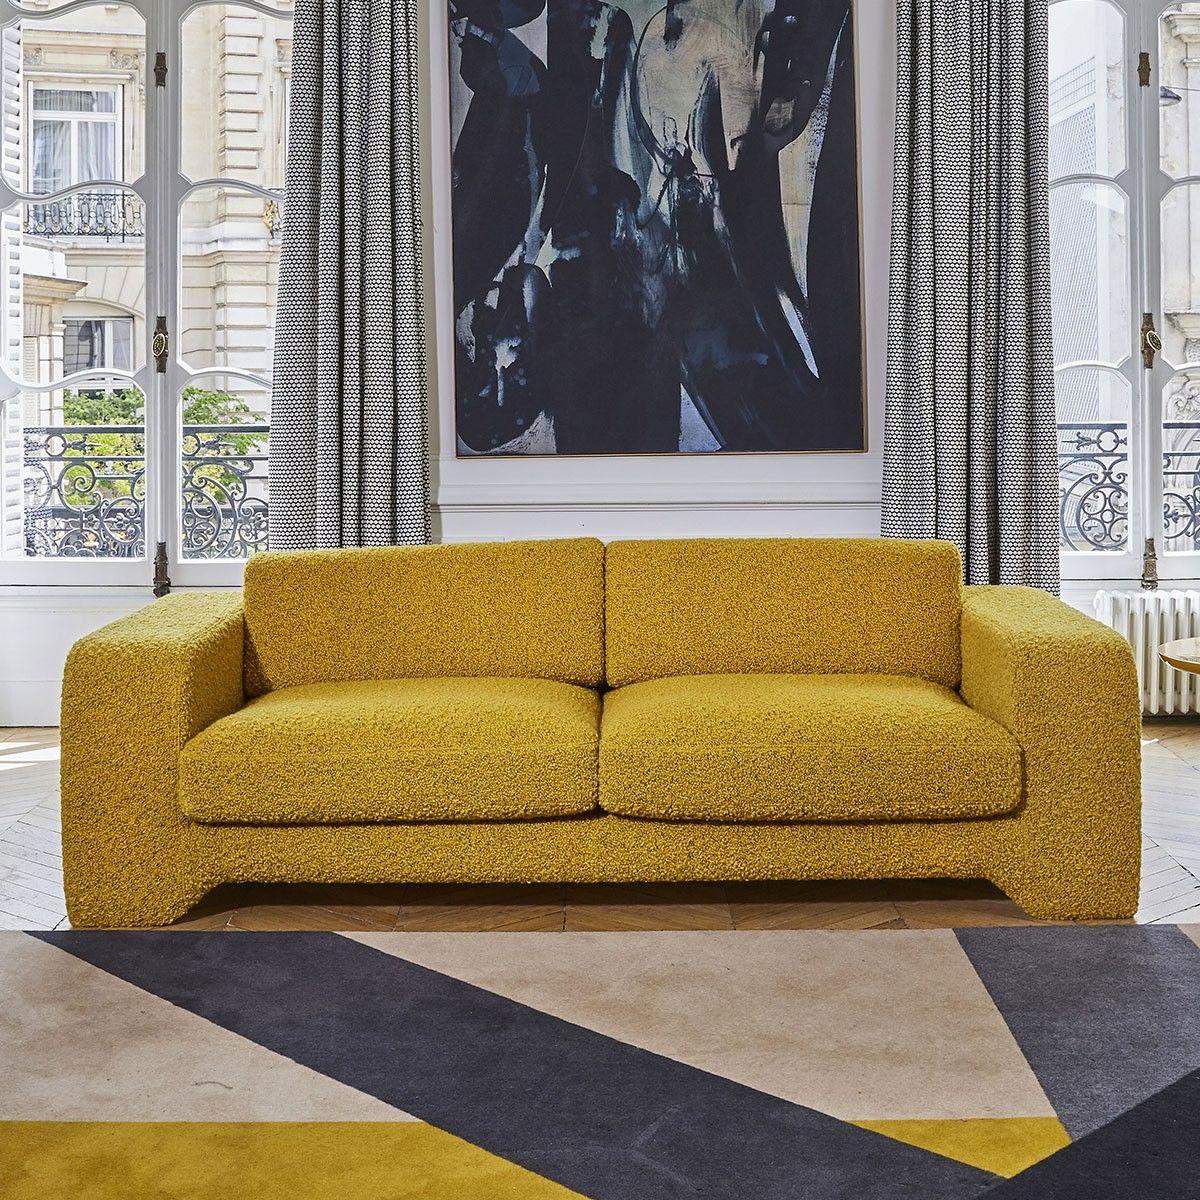 Popus Editions Giovanna 3 Seater Sofa in Ciotello Venice Chenille Velvet Fabric In New Condition For Sale In Paris, FR